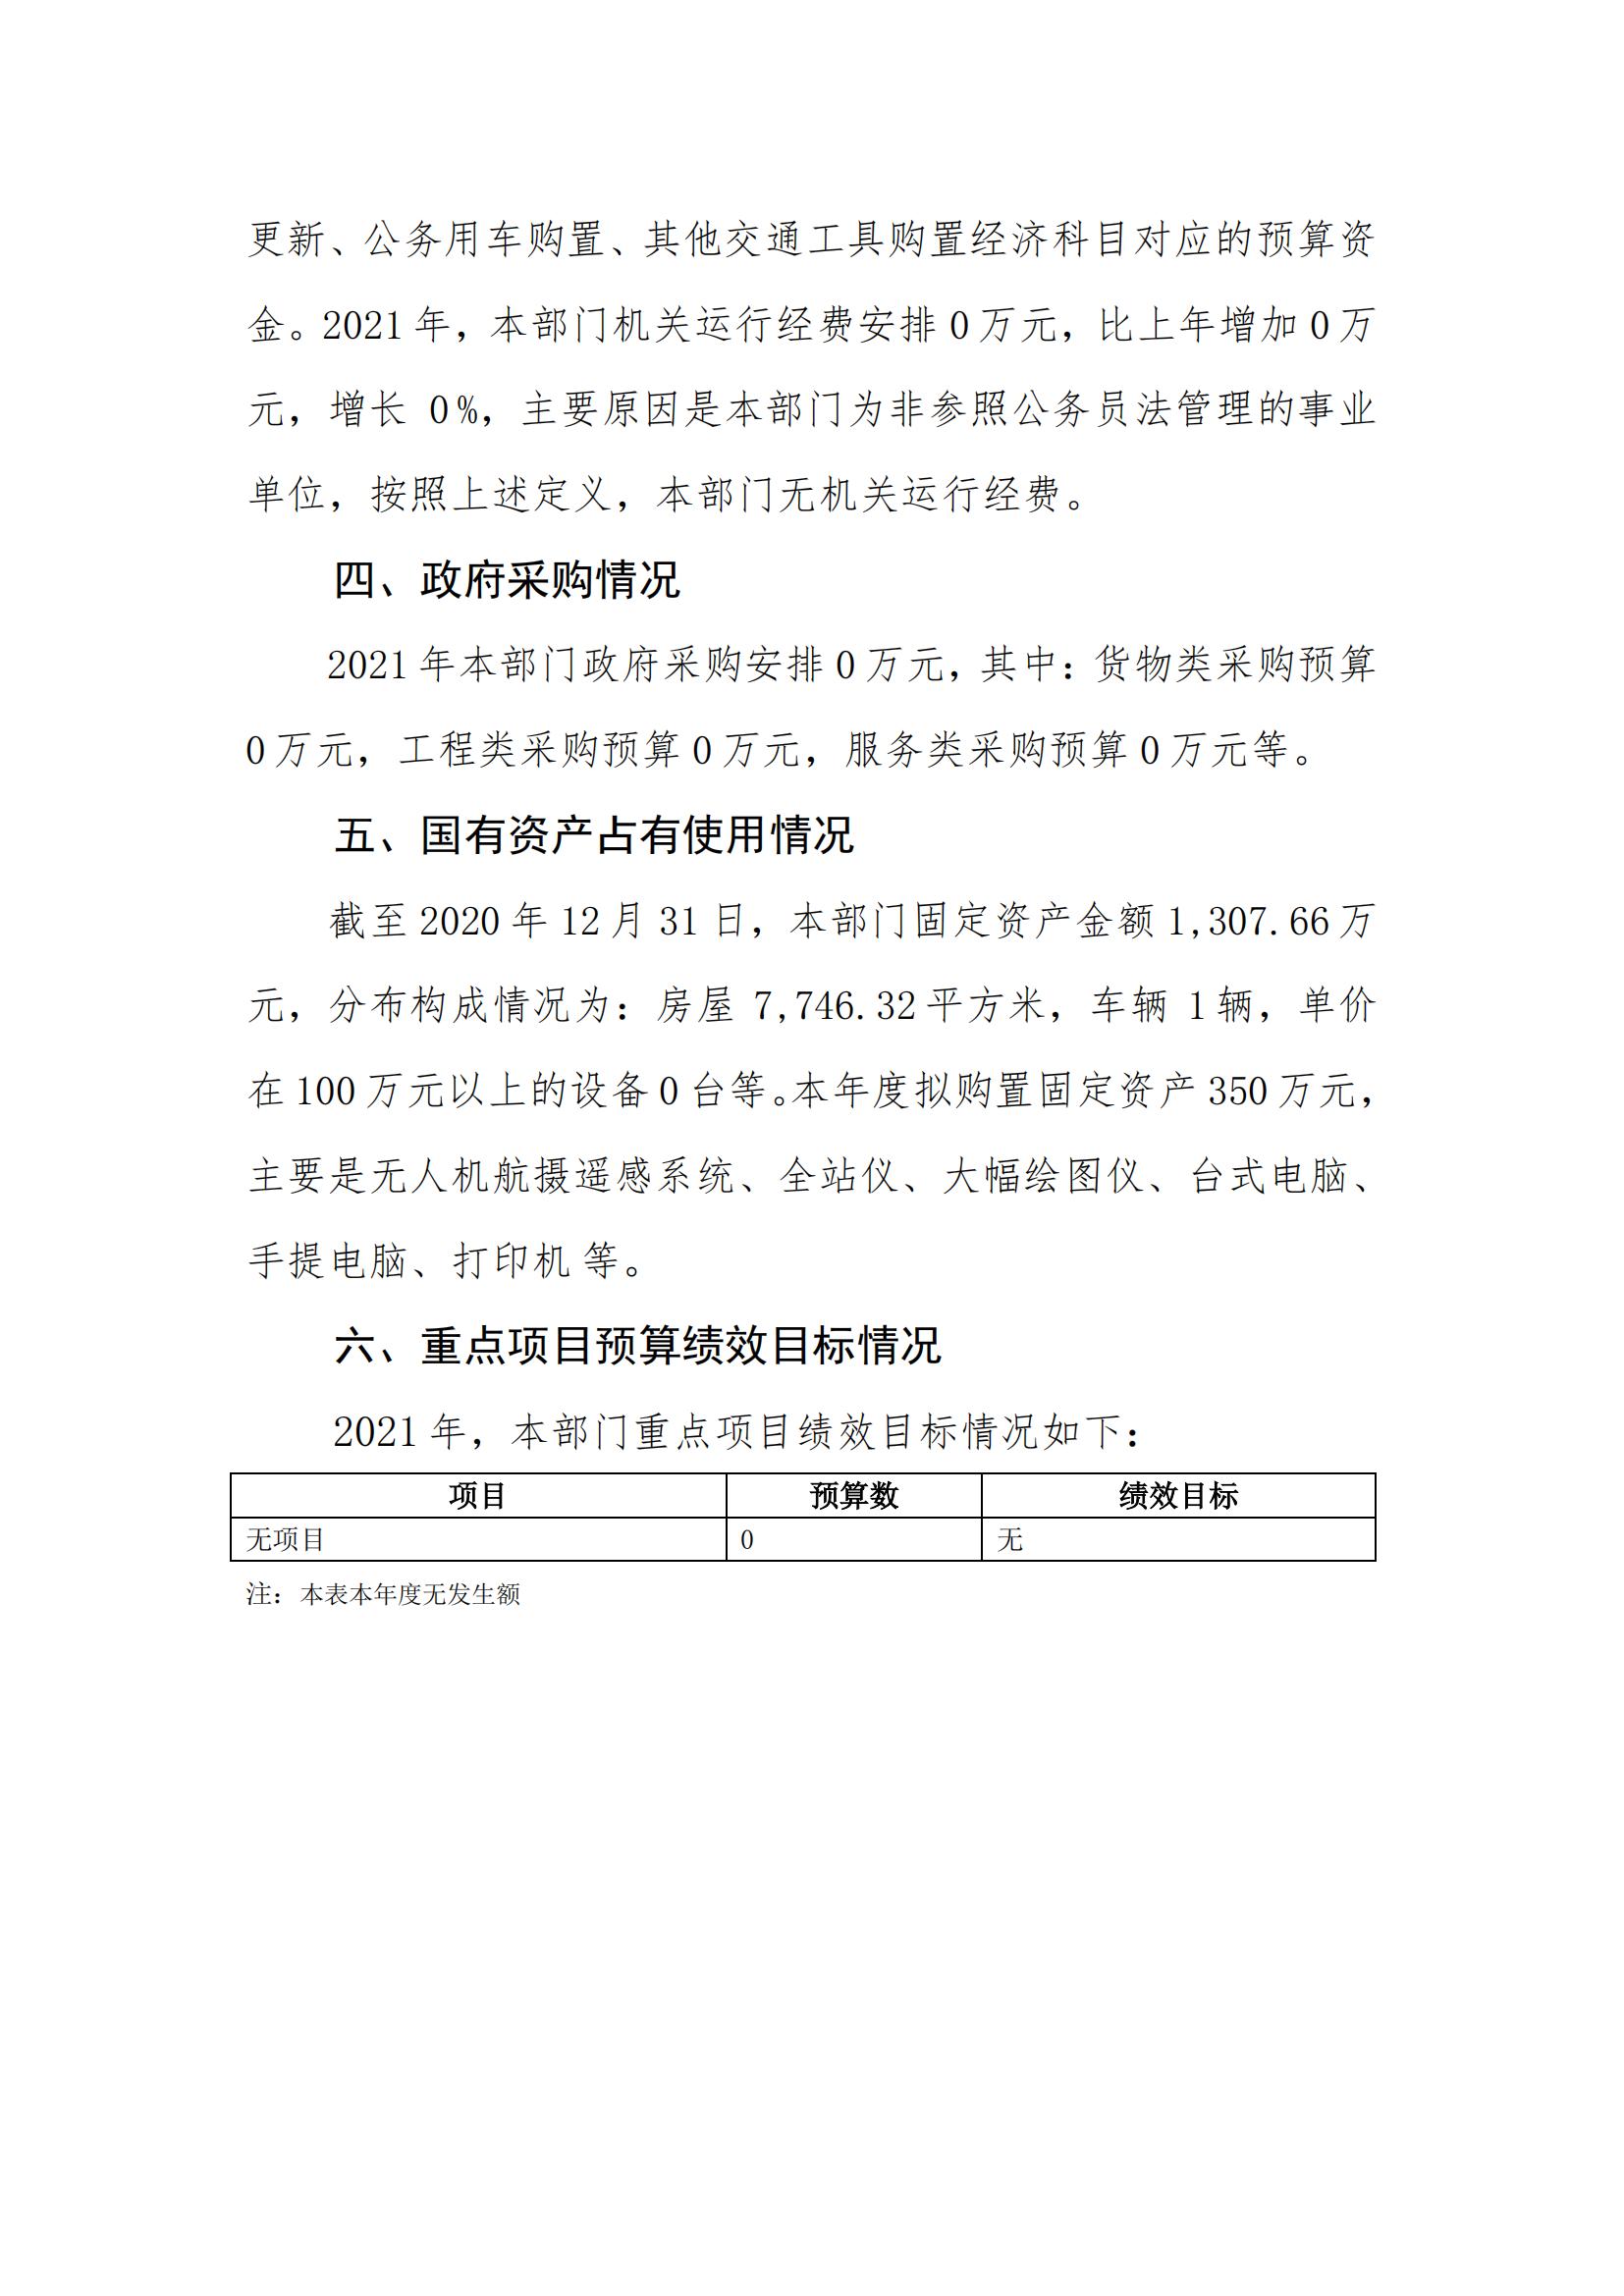 2021年广东省地质测绘院部门预算公开_21.jpg